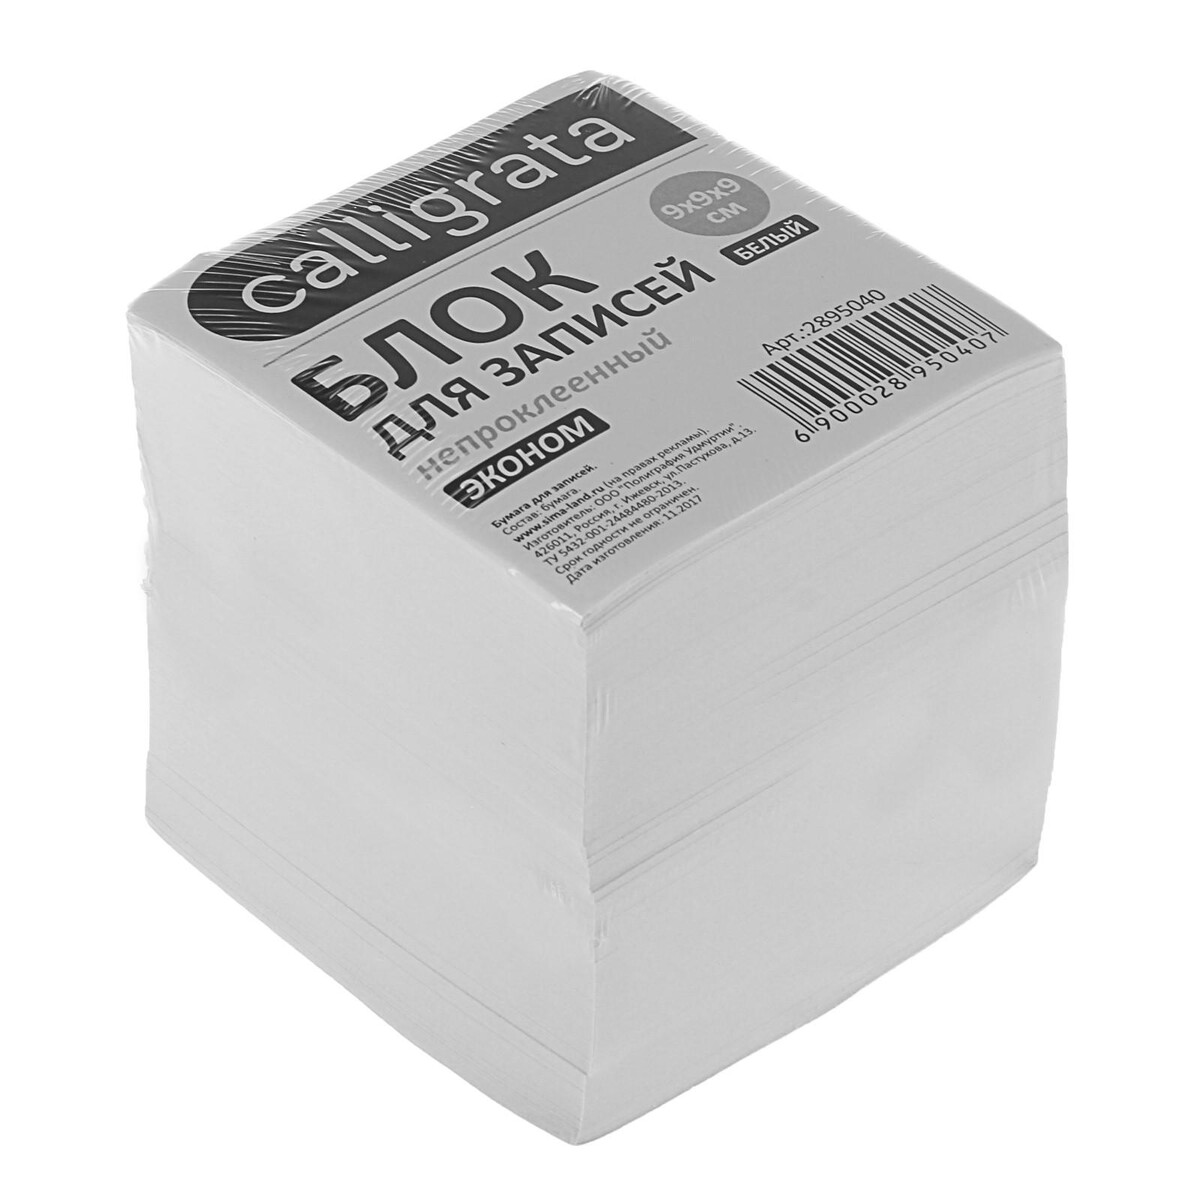 Блок бумаги для записей 9x9x9 см, calligrata, 55 г/м², 70-80%, непроклеенный, белый блок для записей staff в подставке прозрачной куб 9х9х5 см белый белизна 90 92% 129193 6 шт